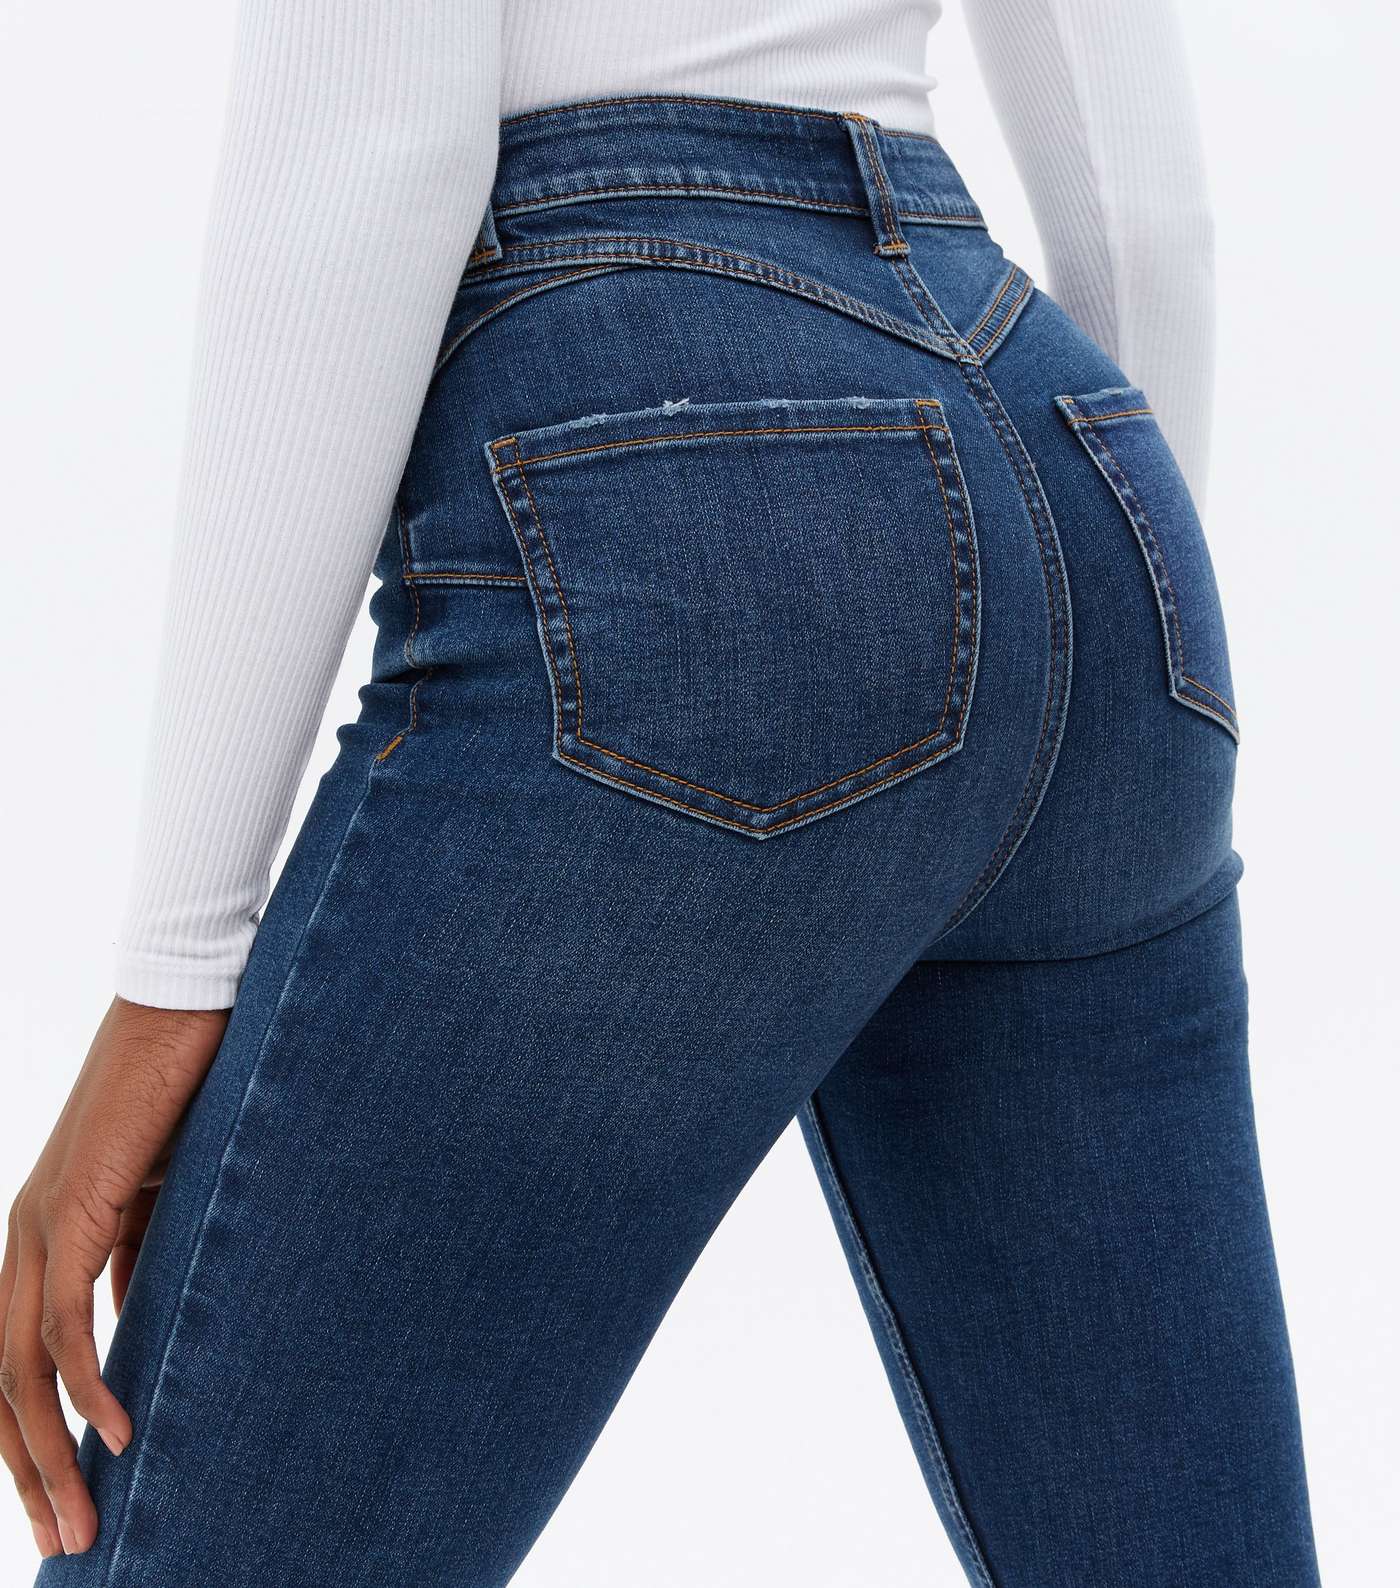 Tall Teal Lift & Shape Jenna Skinny Jeans Image 3